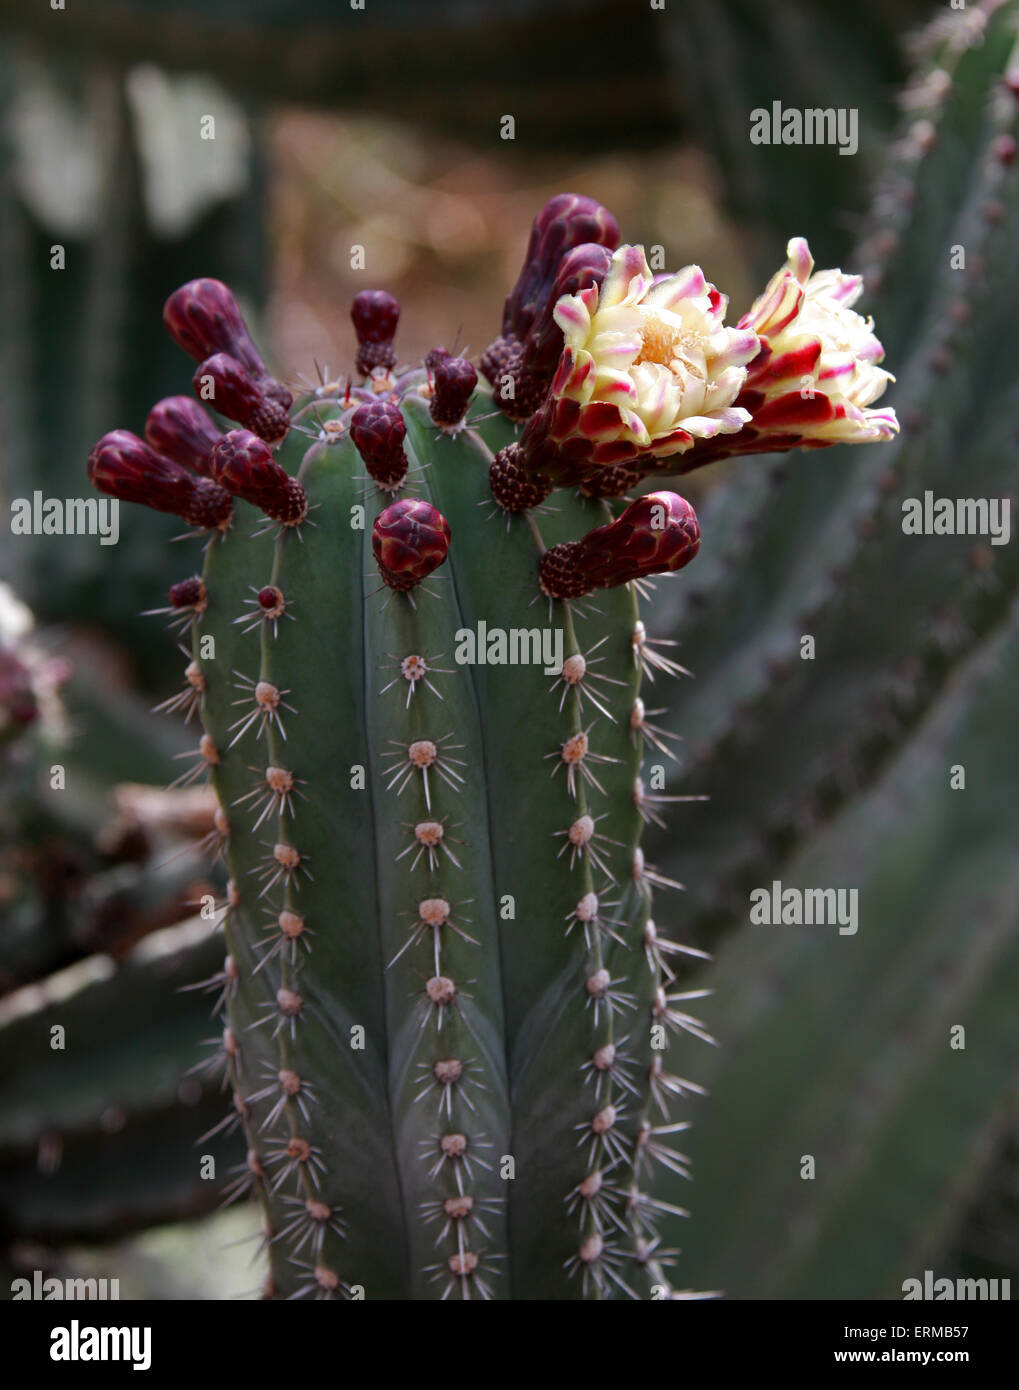 Flowering Cactus, Stenocereus pruinosus, Cactaceae. Mexico. Stock Photo